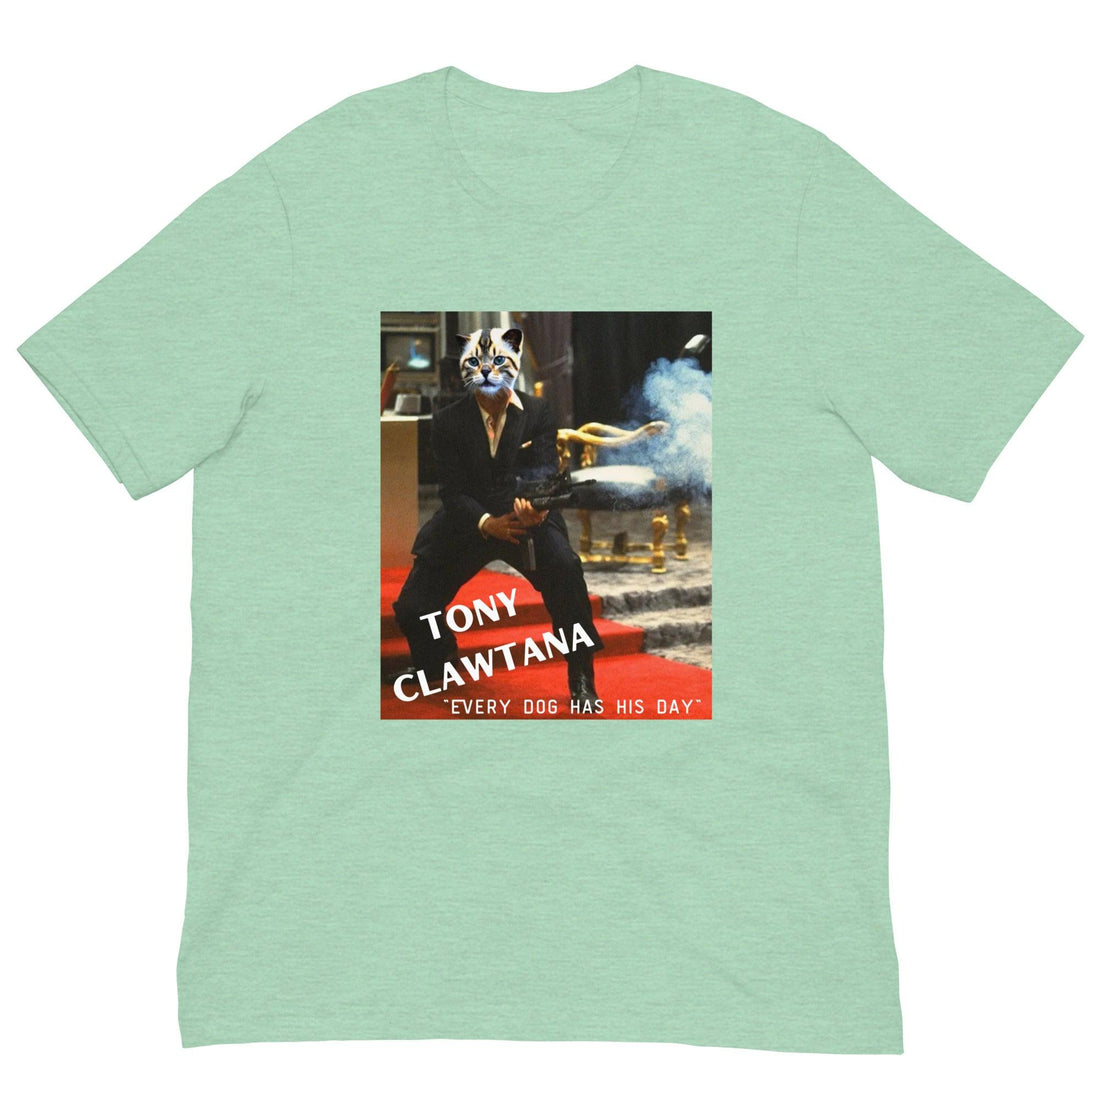 Tony Clawtana Cat Shirt - Cat Shirts USA